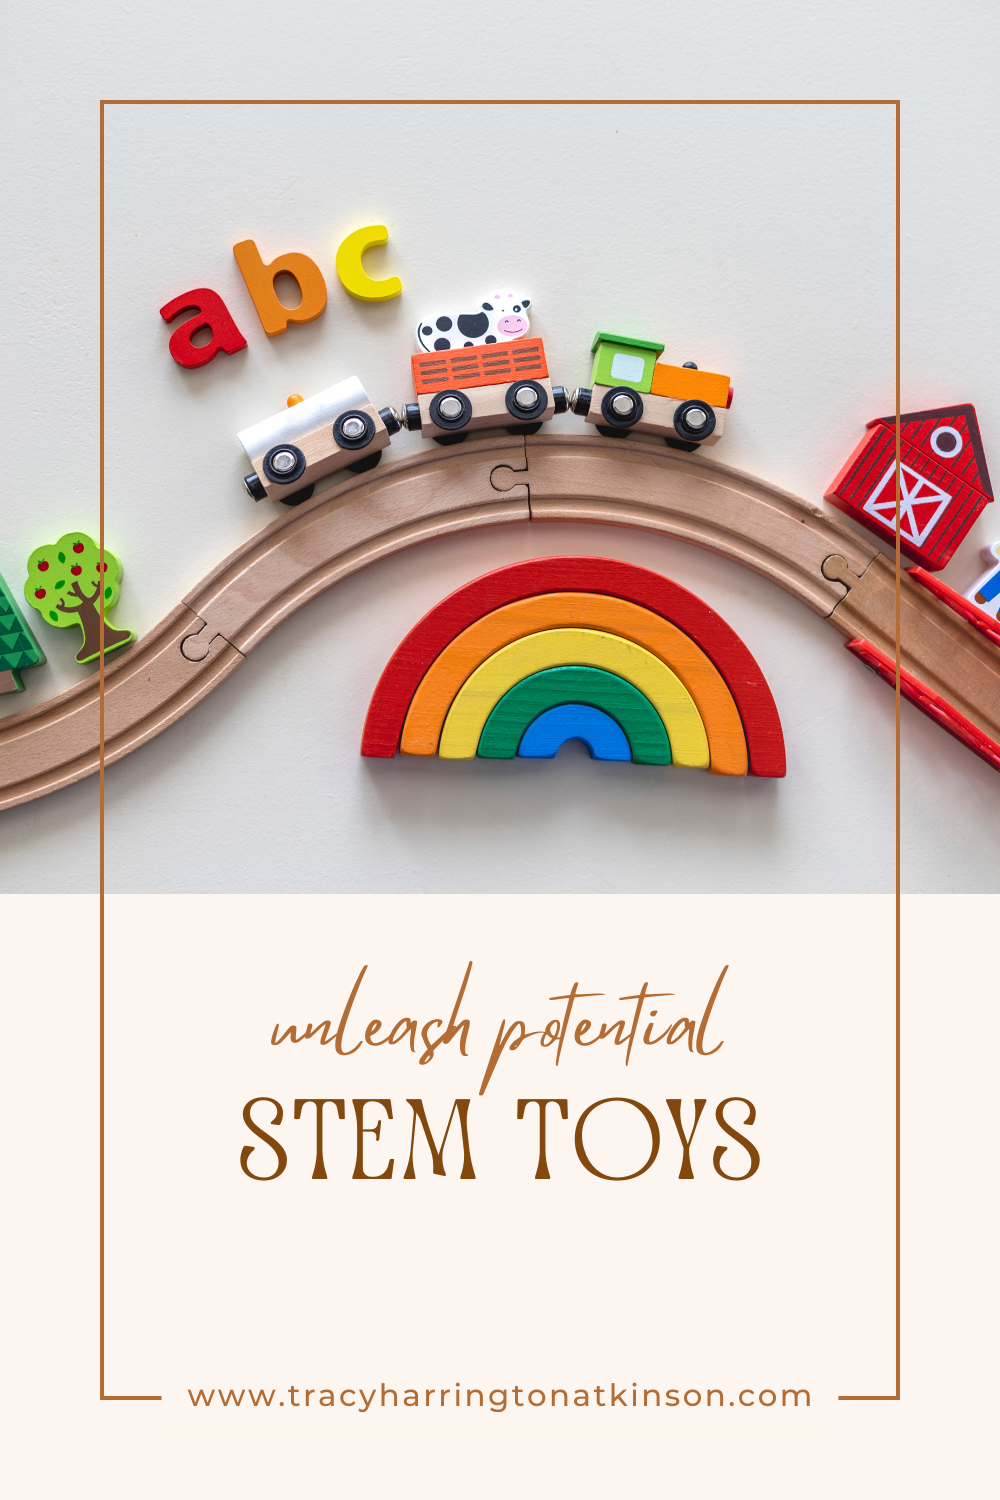 STEM Toys Unleash Potential